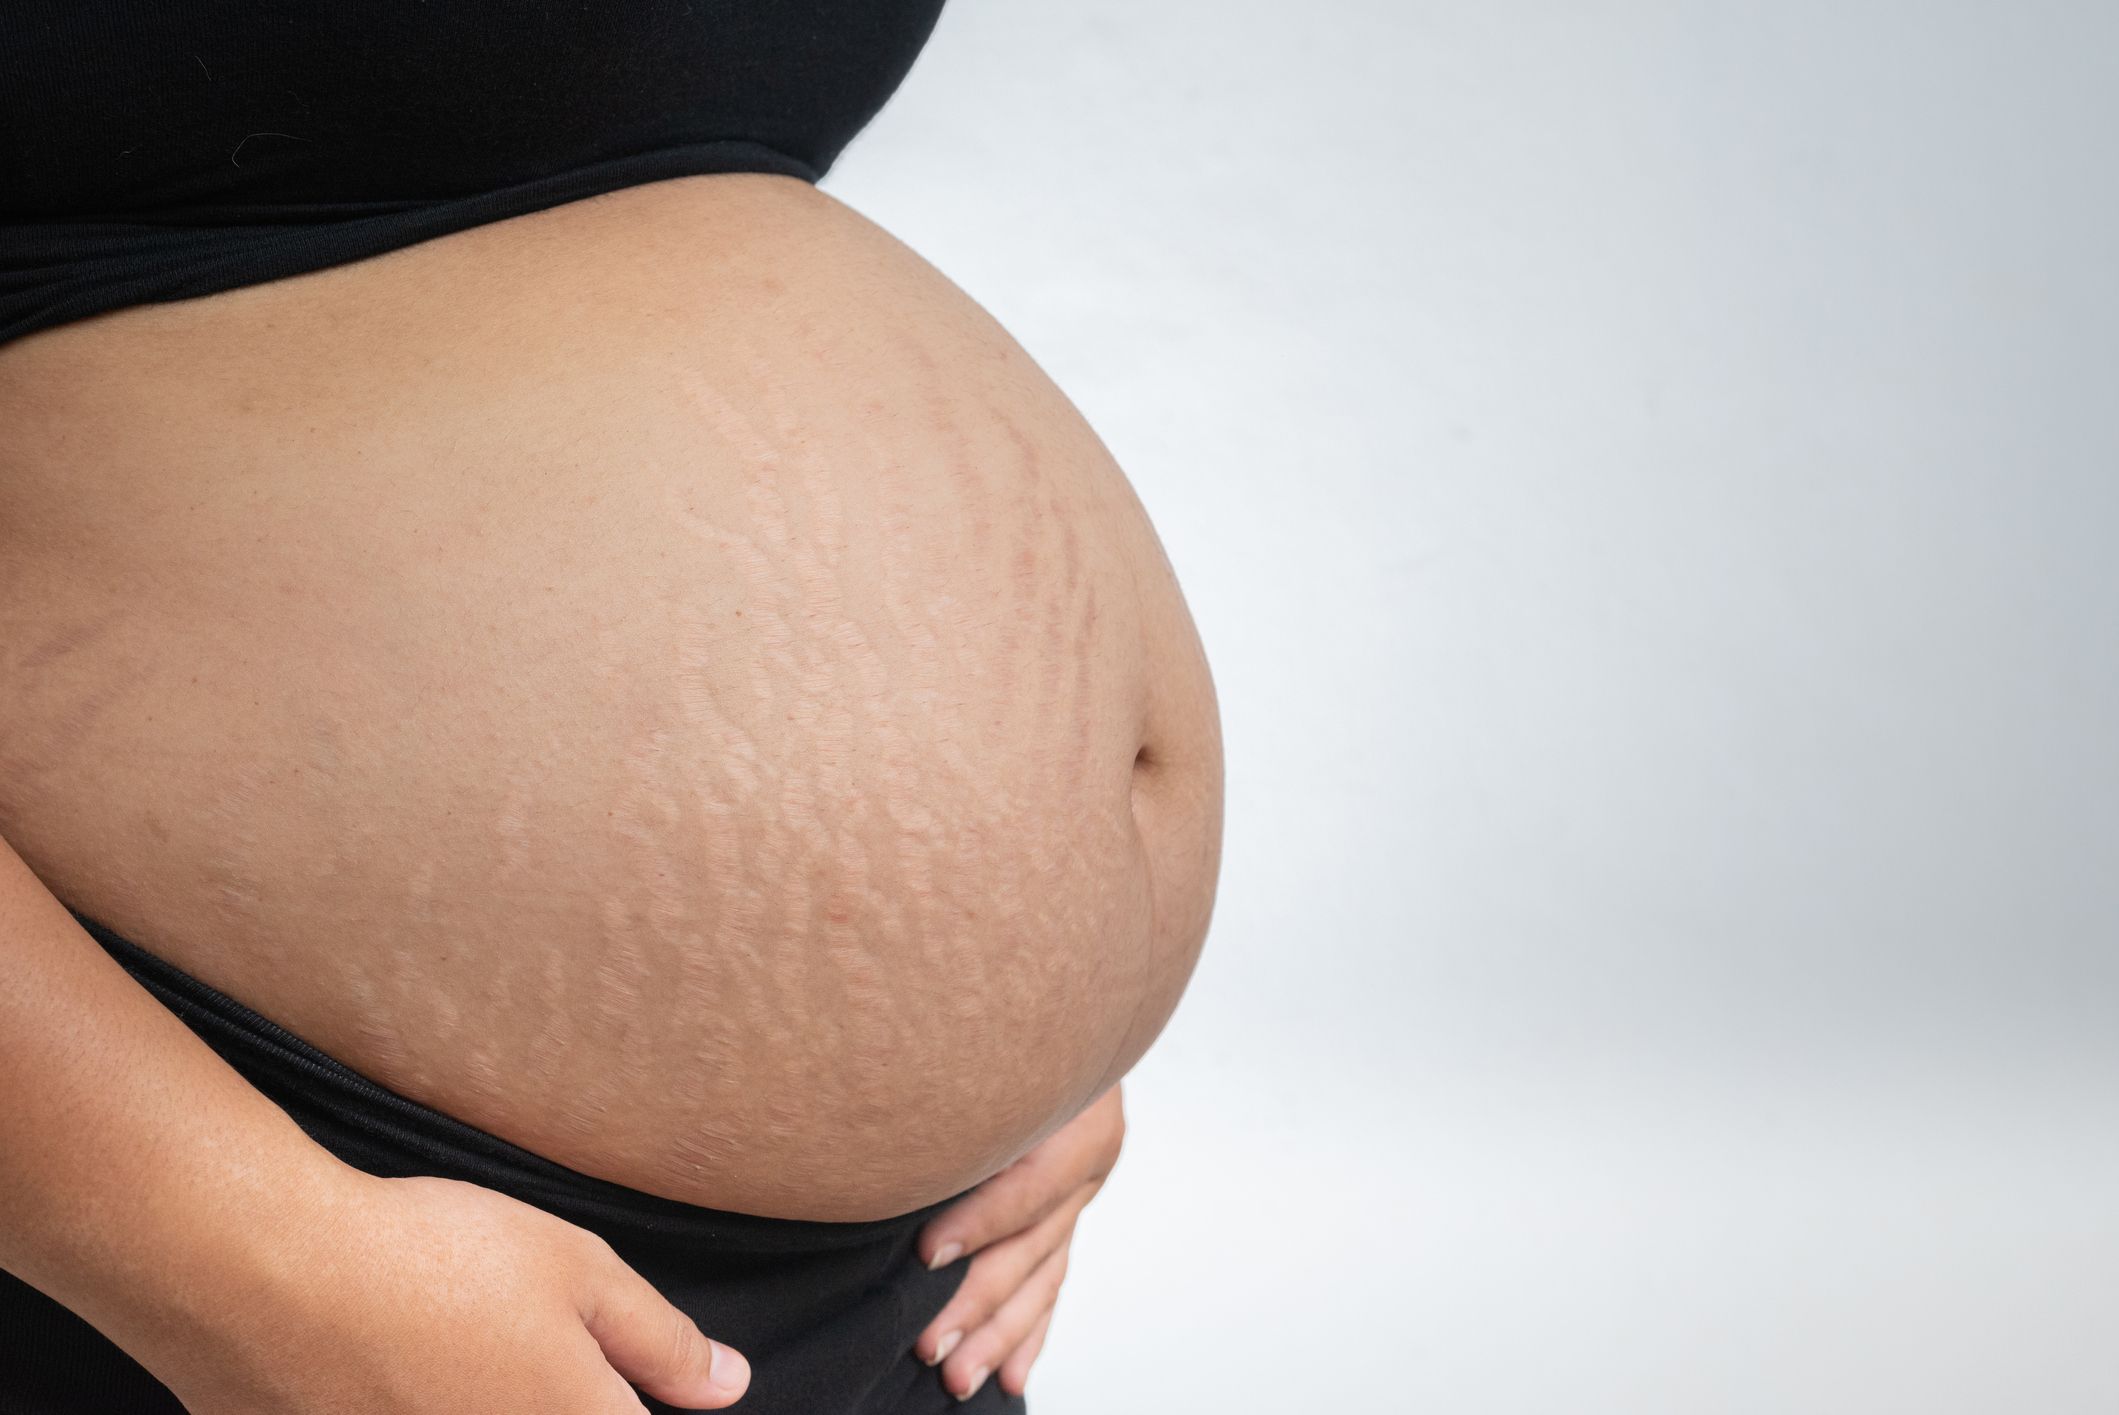 Ventre de la femme enceinte : évolution, forme, quand s'arrondit-il ?